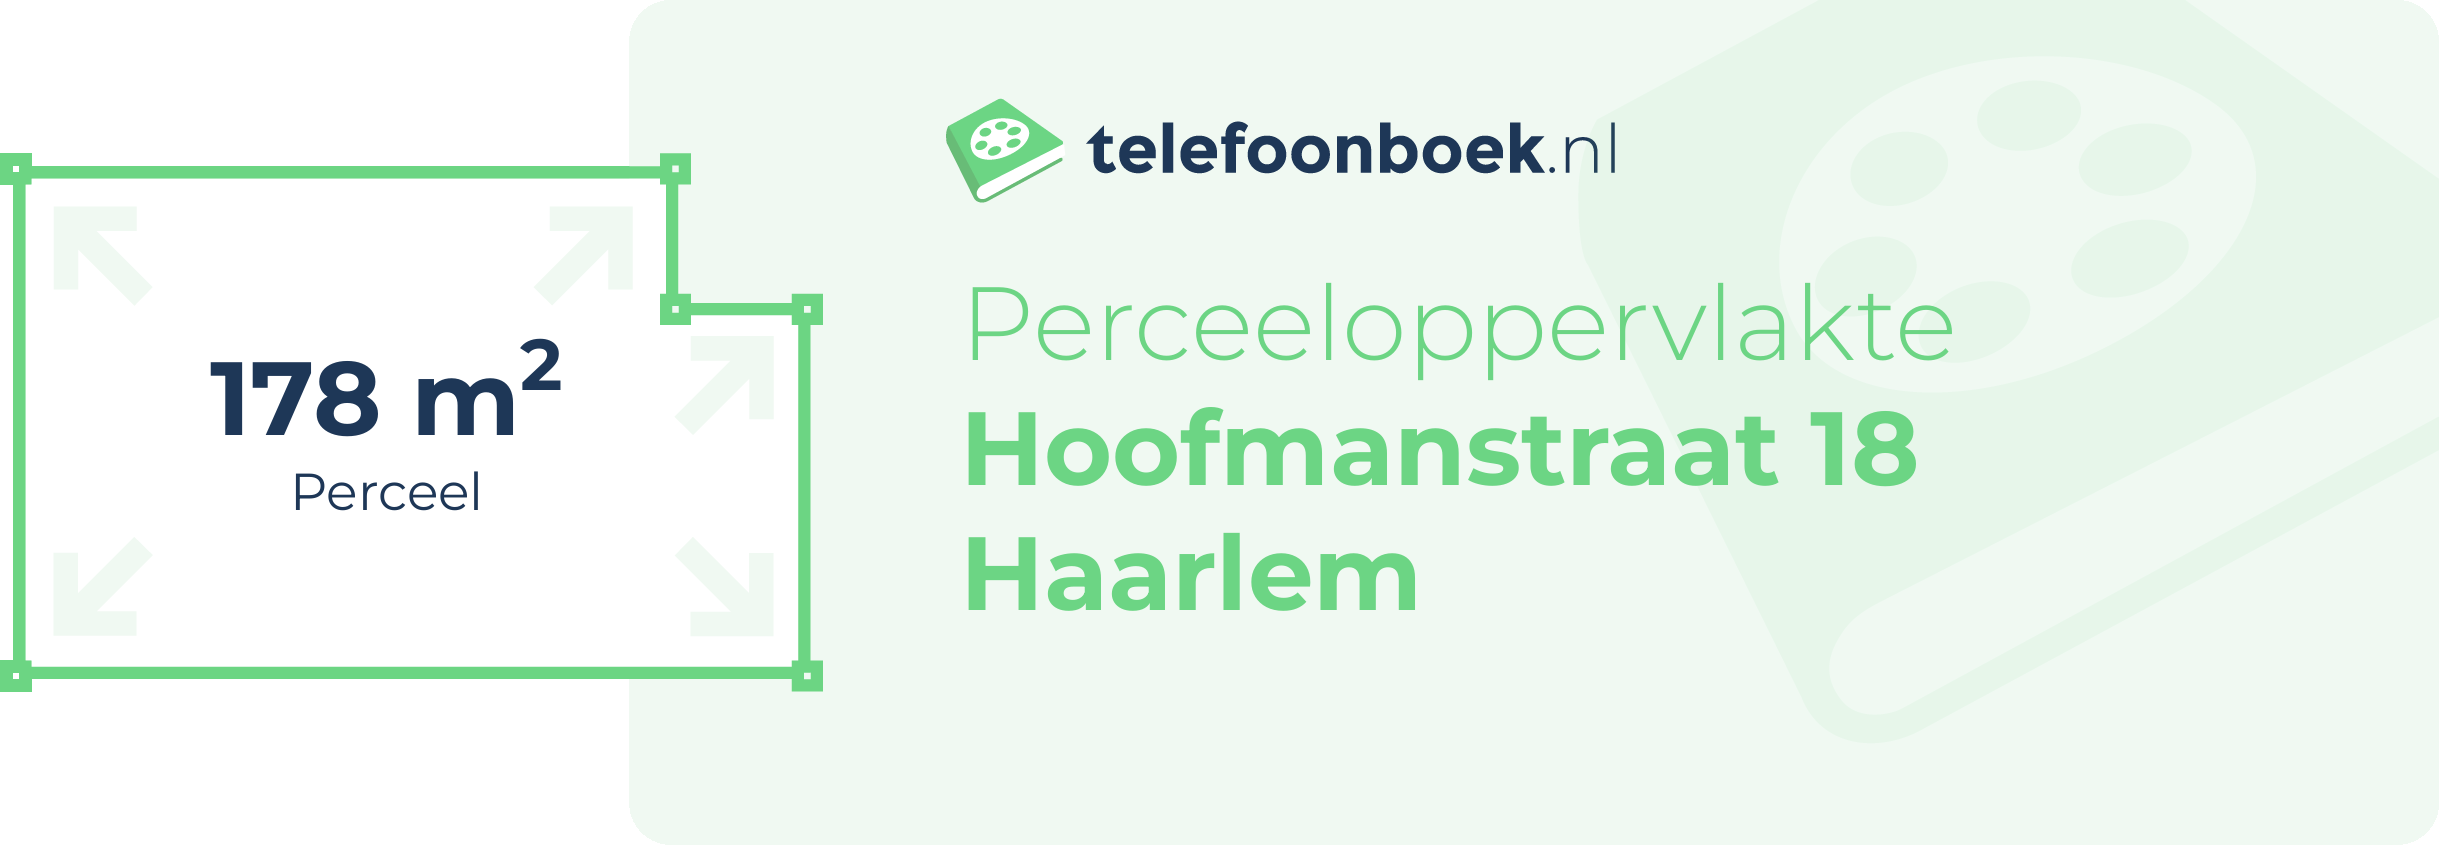 Perceeloppervlakte Hoofmanstraat 18 Haarlem